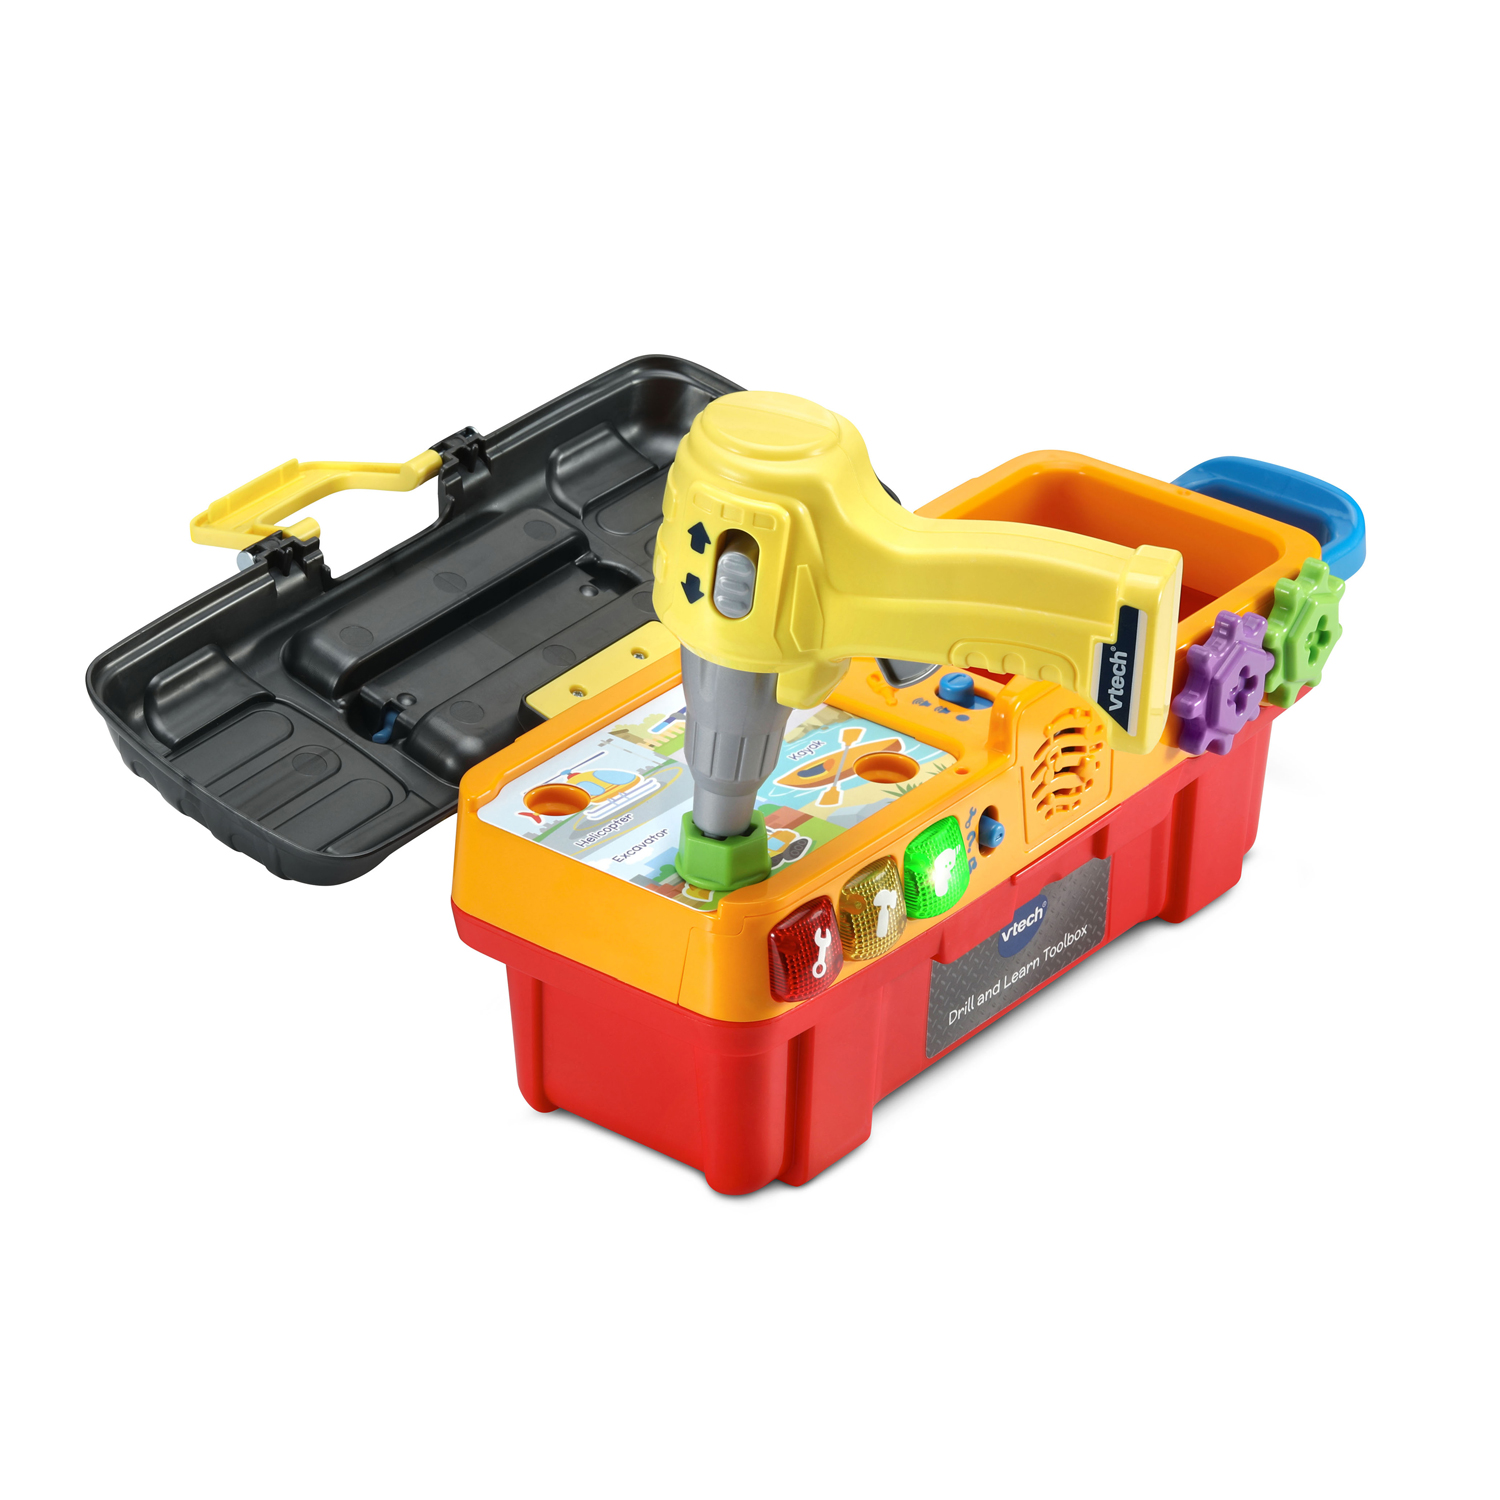 VTech - Boîte à outils pour enfant - Ma super boîte à outils